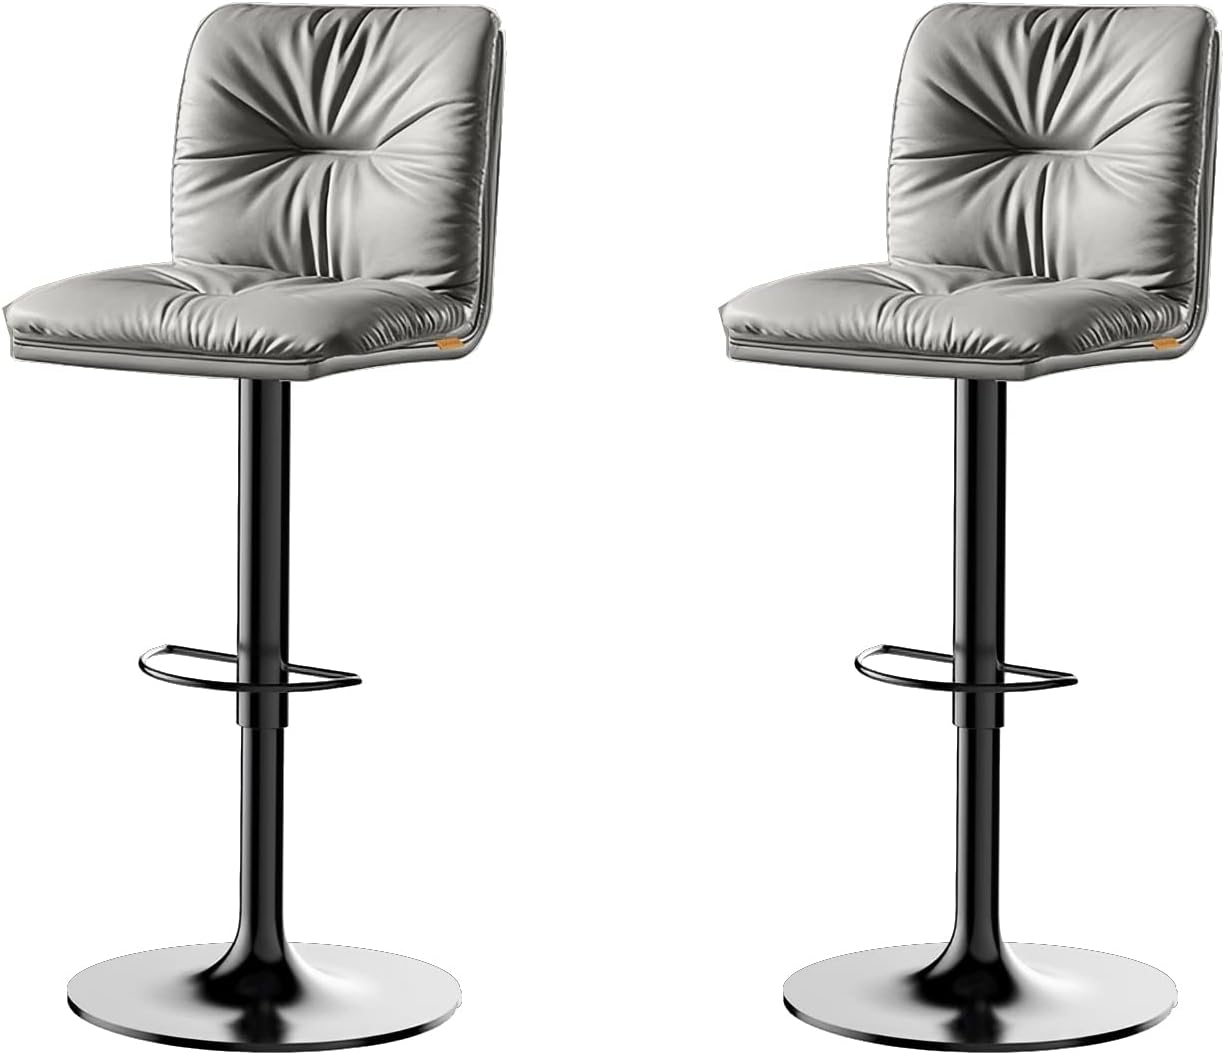 Sada 2 barových židlí s nastavitelnou výškou Barva: Světle šedá